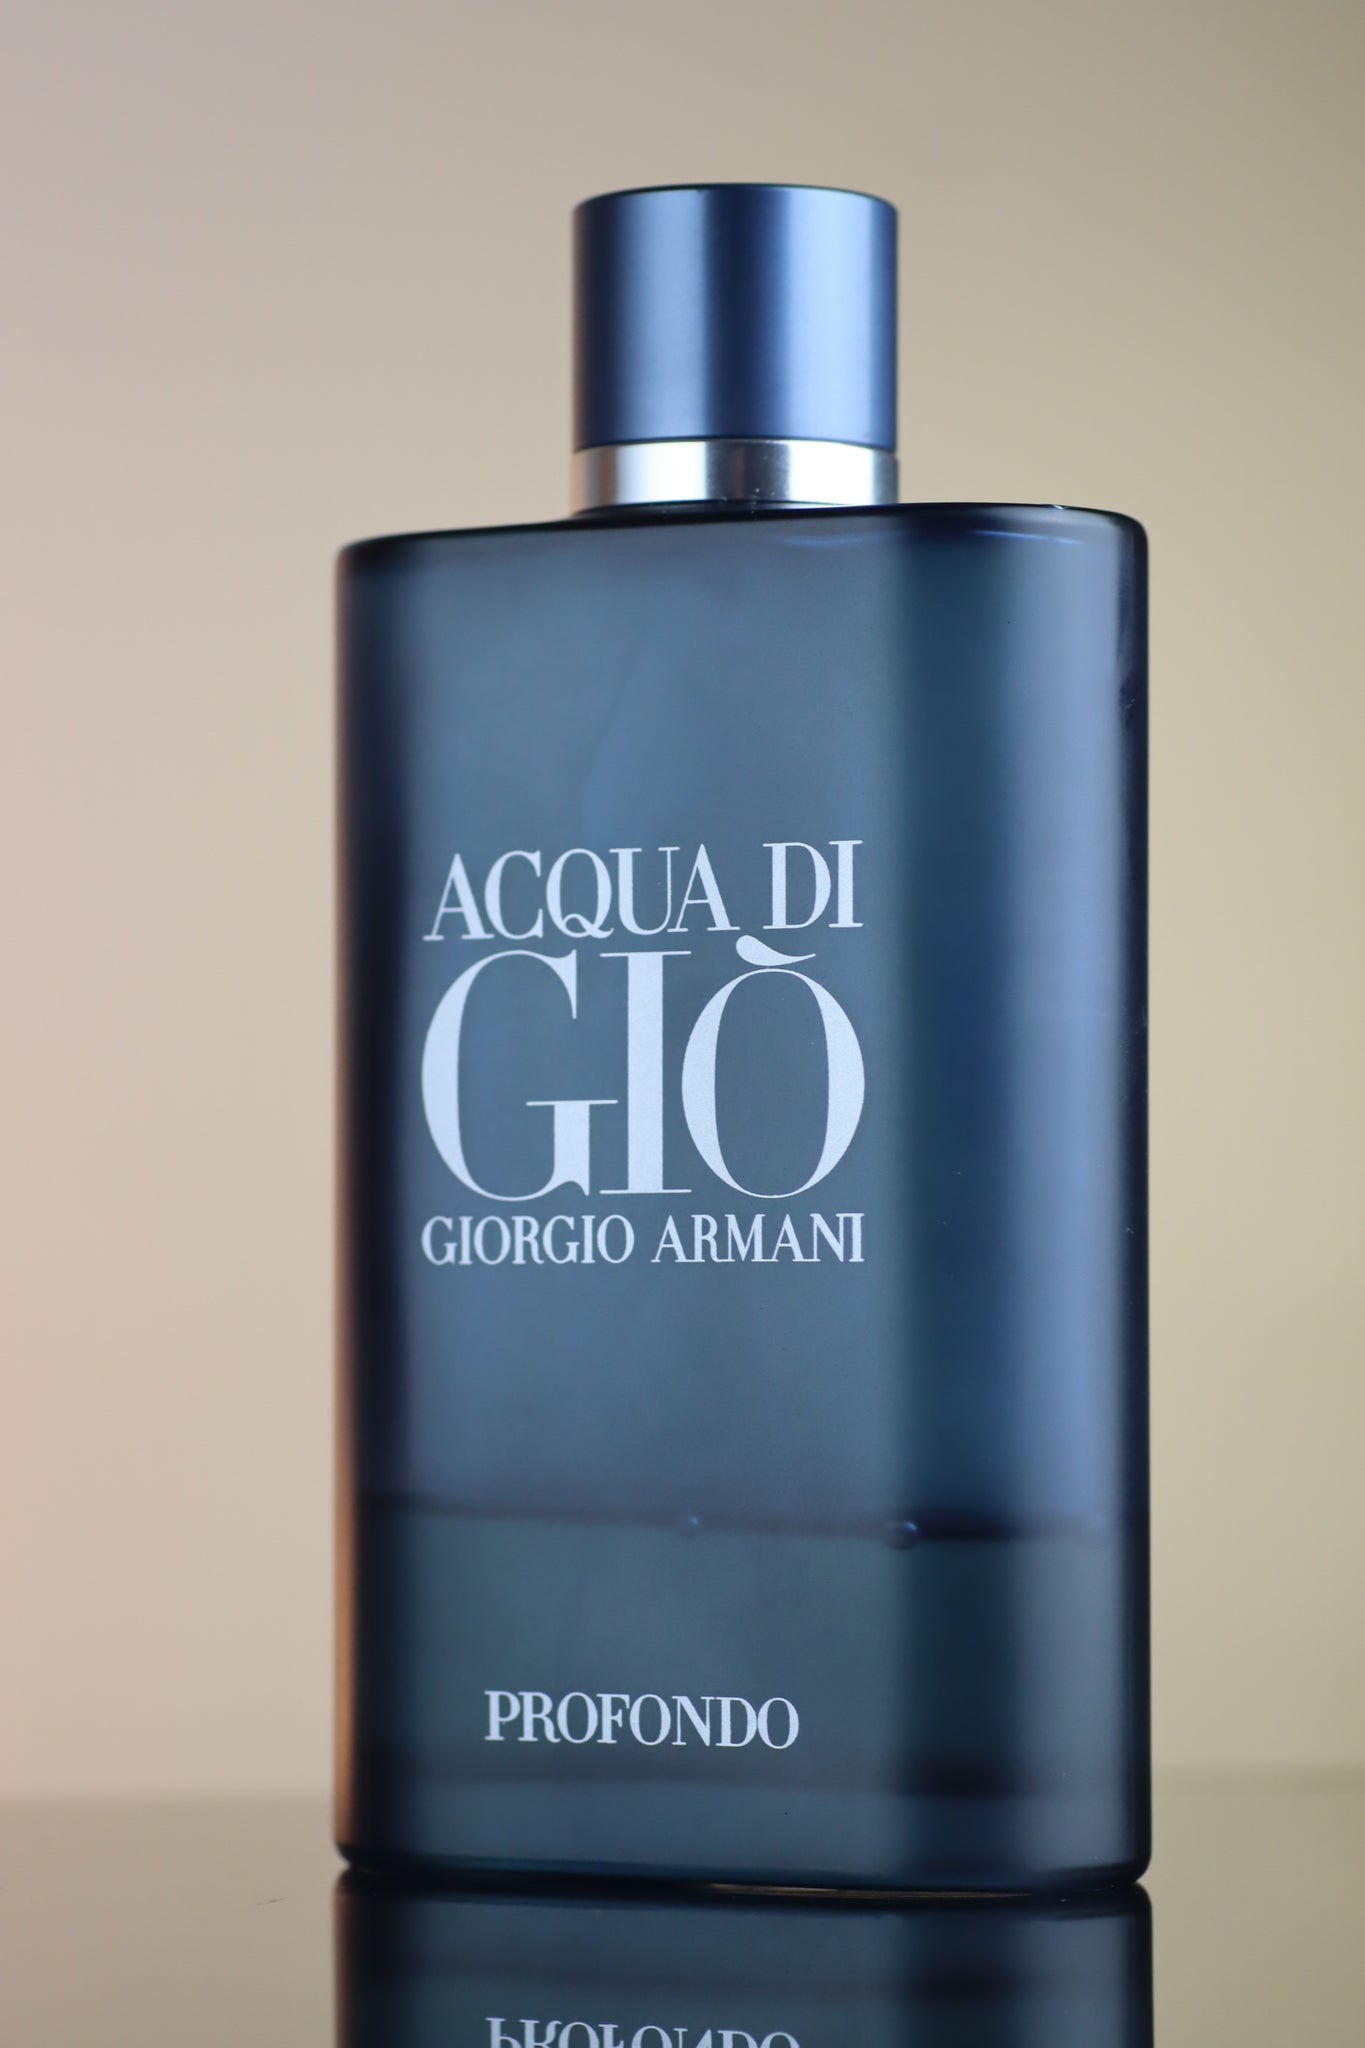 Giorgio Armani Acqua di Gio Profondo Eau de Toilette for Men